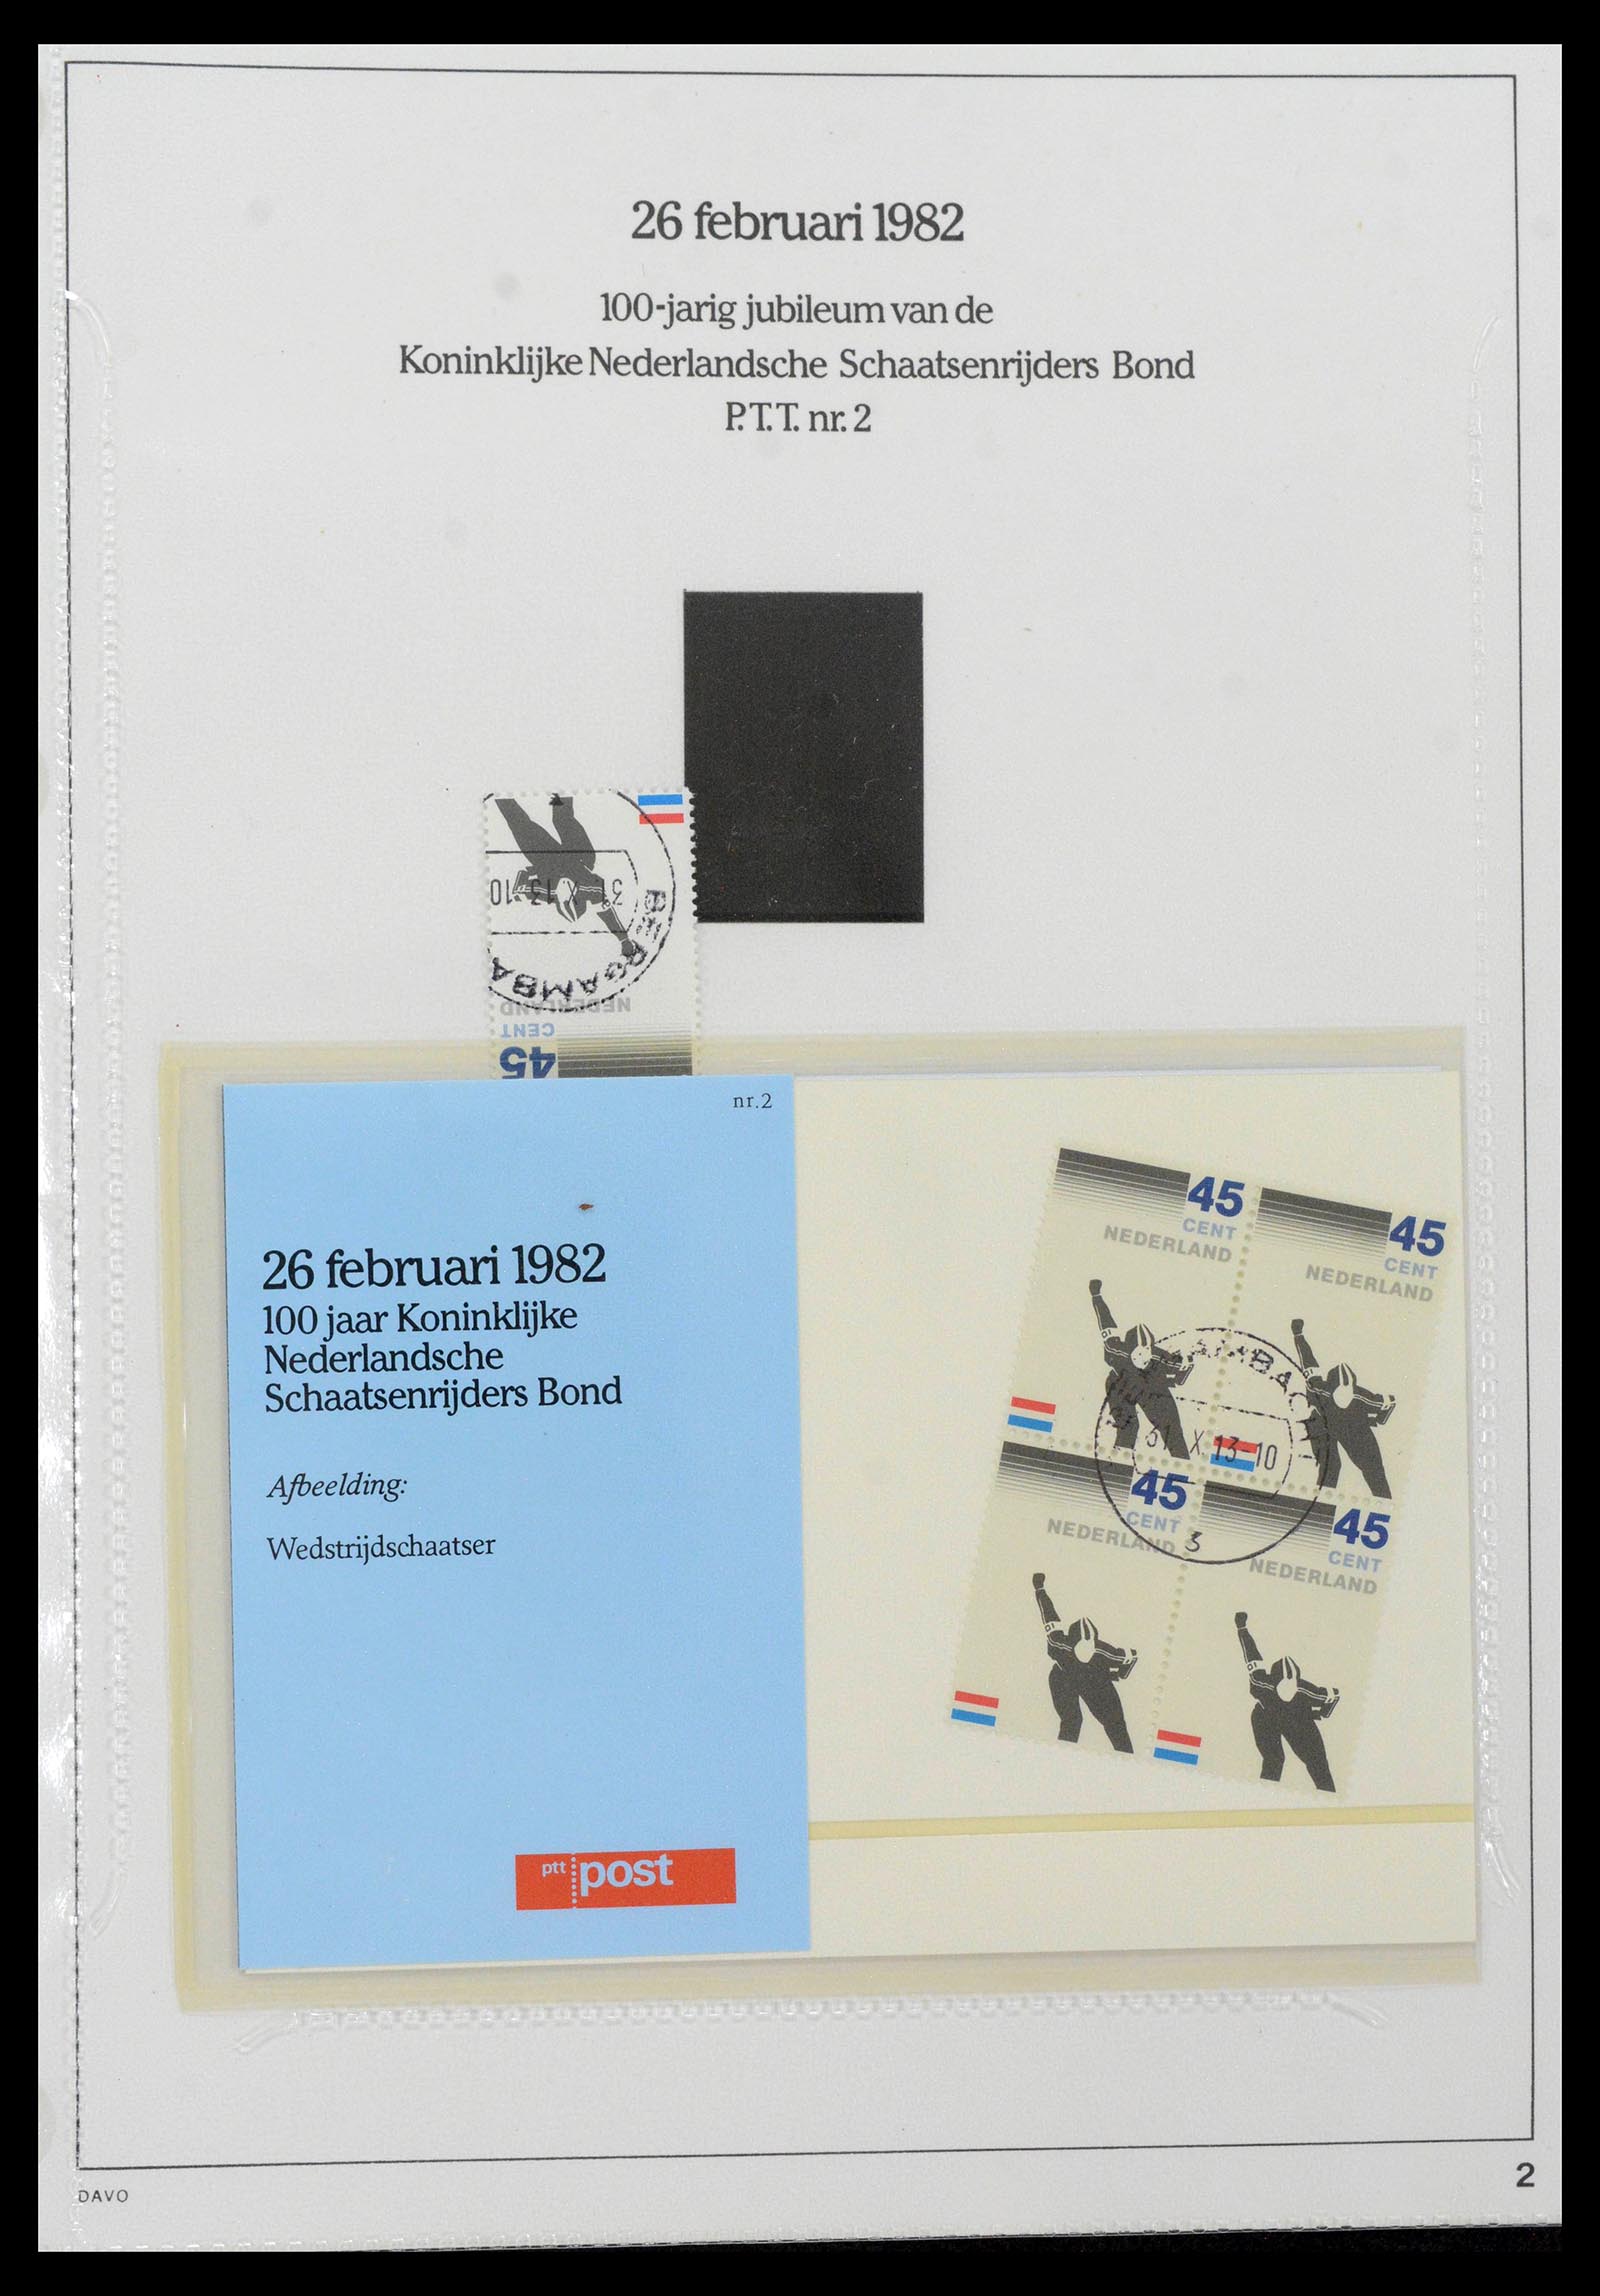 39121 0002 - Stamp collection 39121 Netherlands presentationpacks 1982-2001.